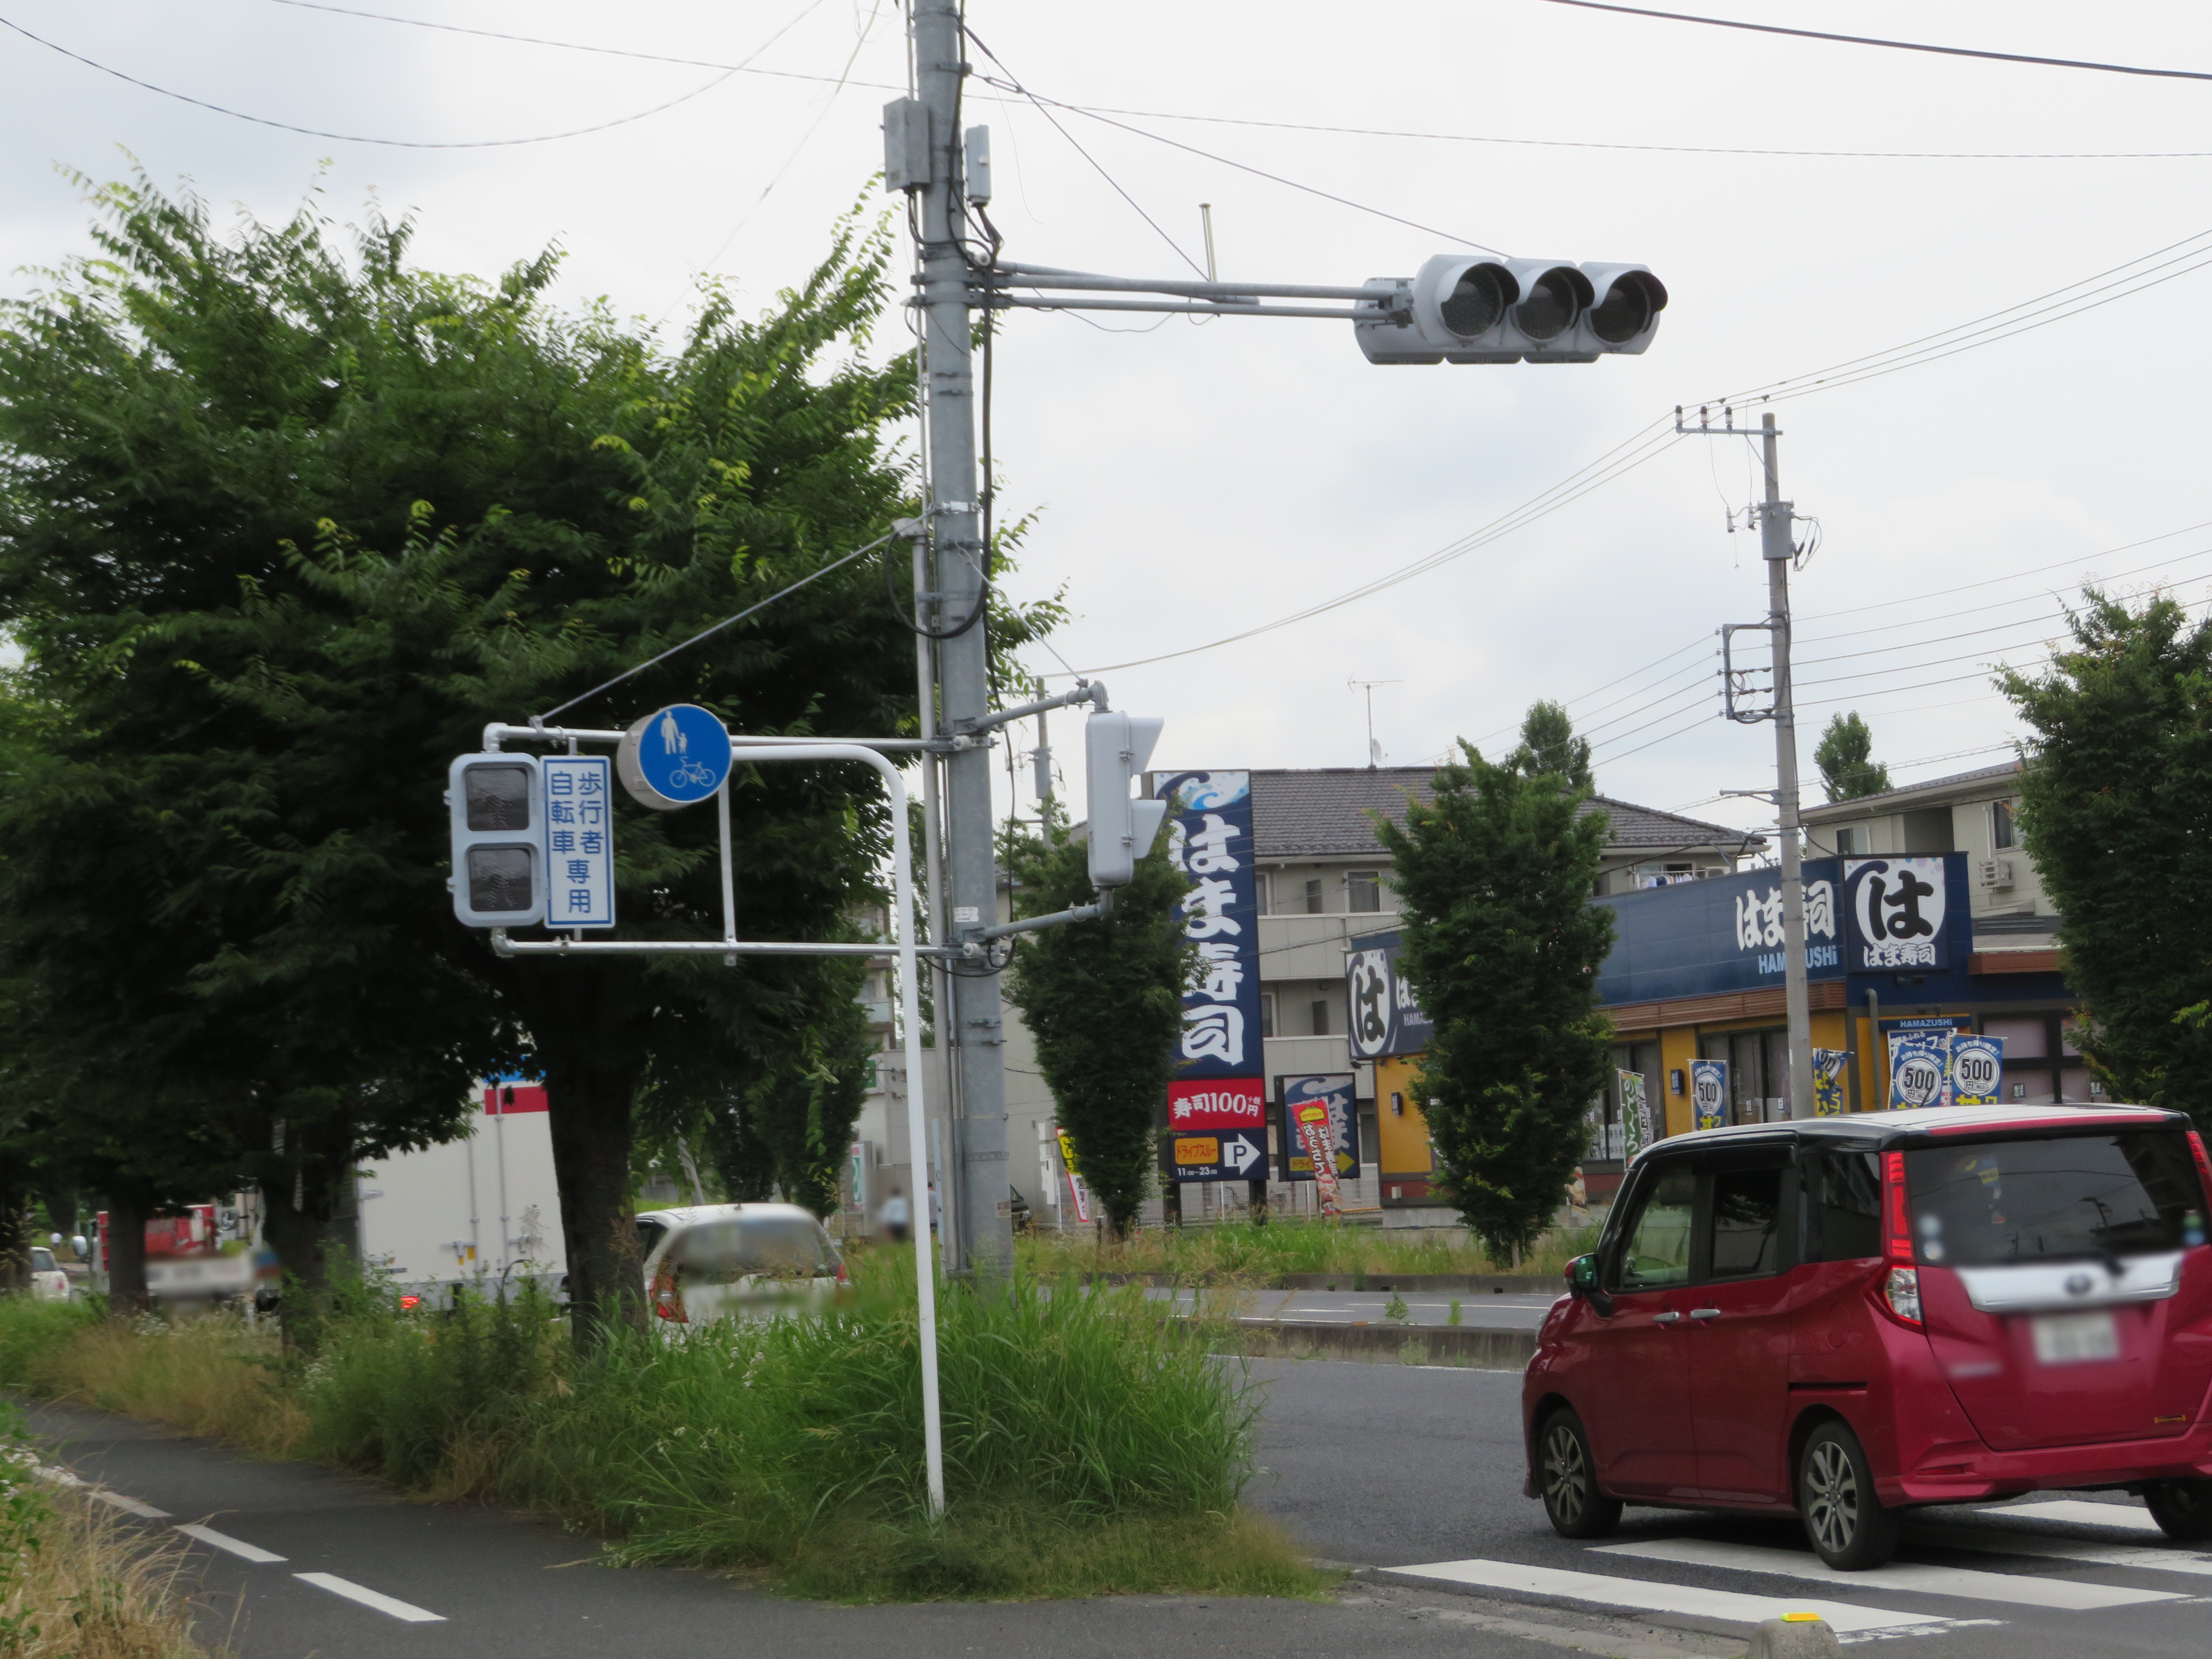 年6月18日 県道52号 の はま寿司 近くの交差点に歩行者用信号が設置されていた件 越谷レイクタウン散歩